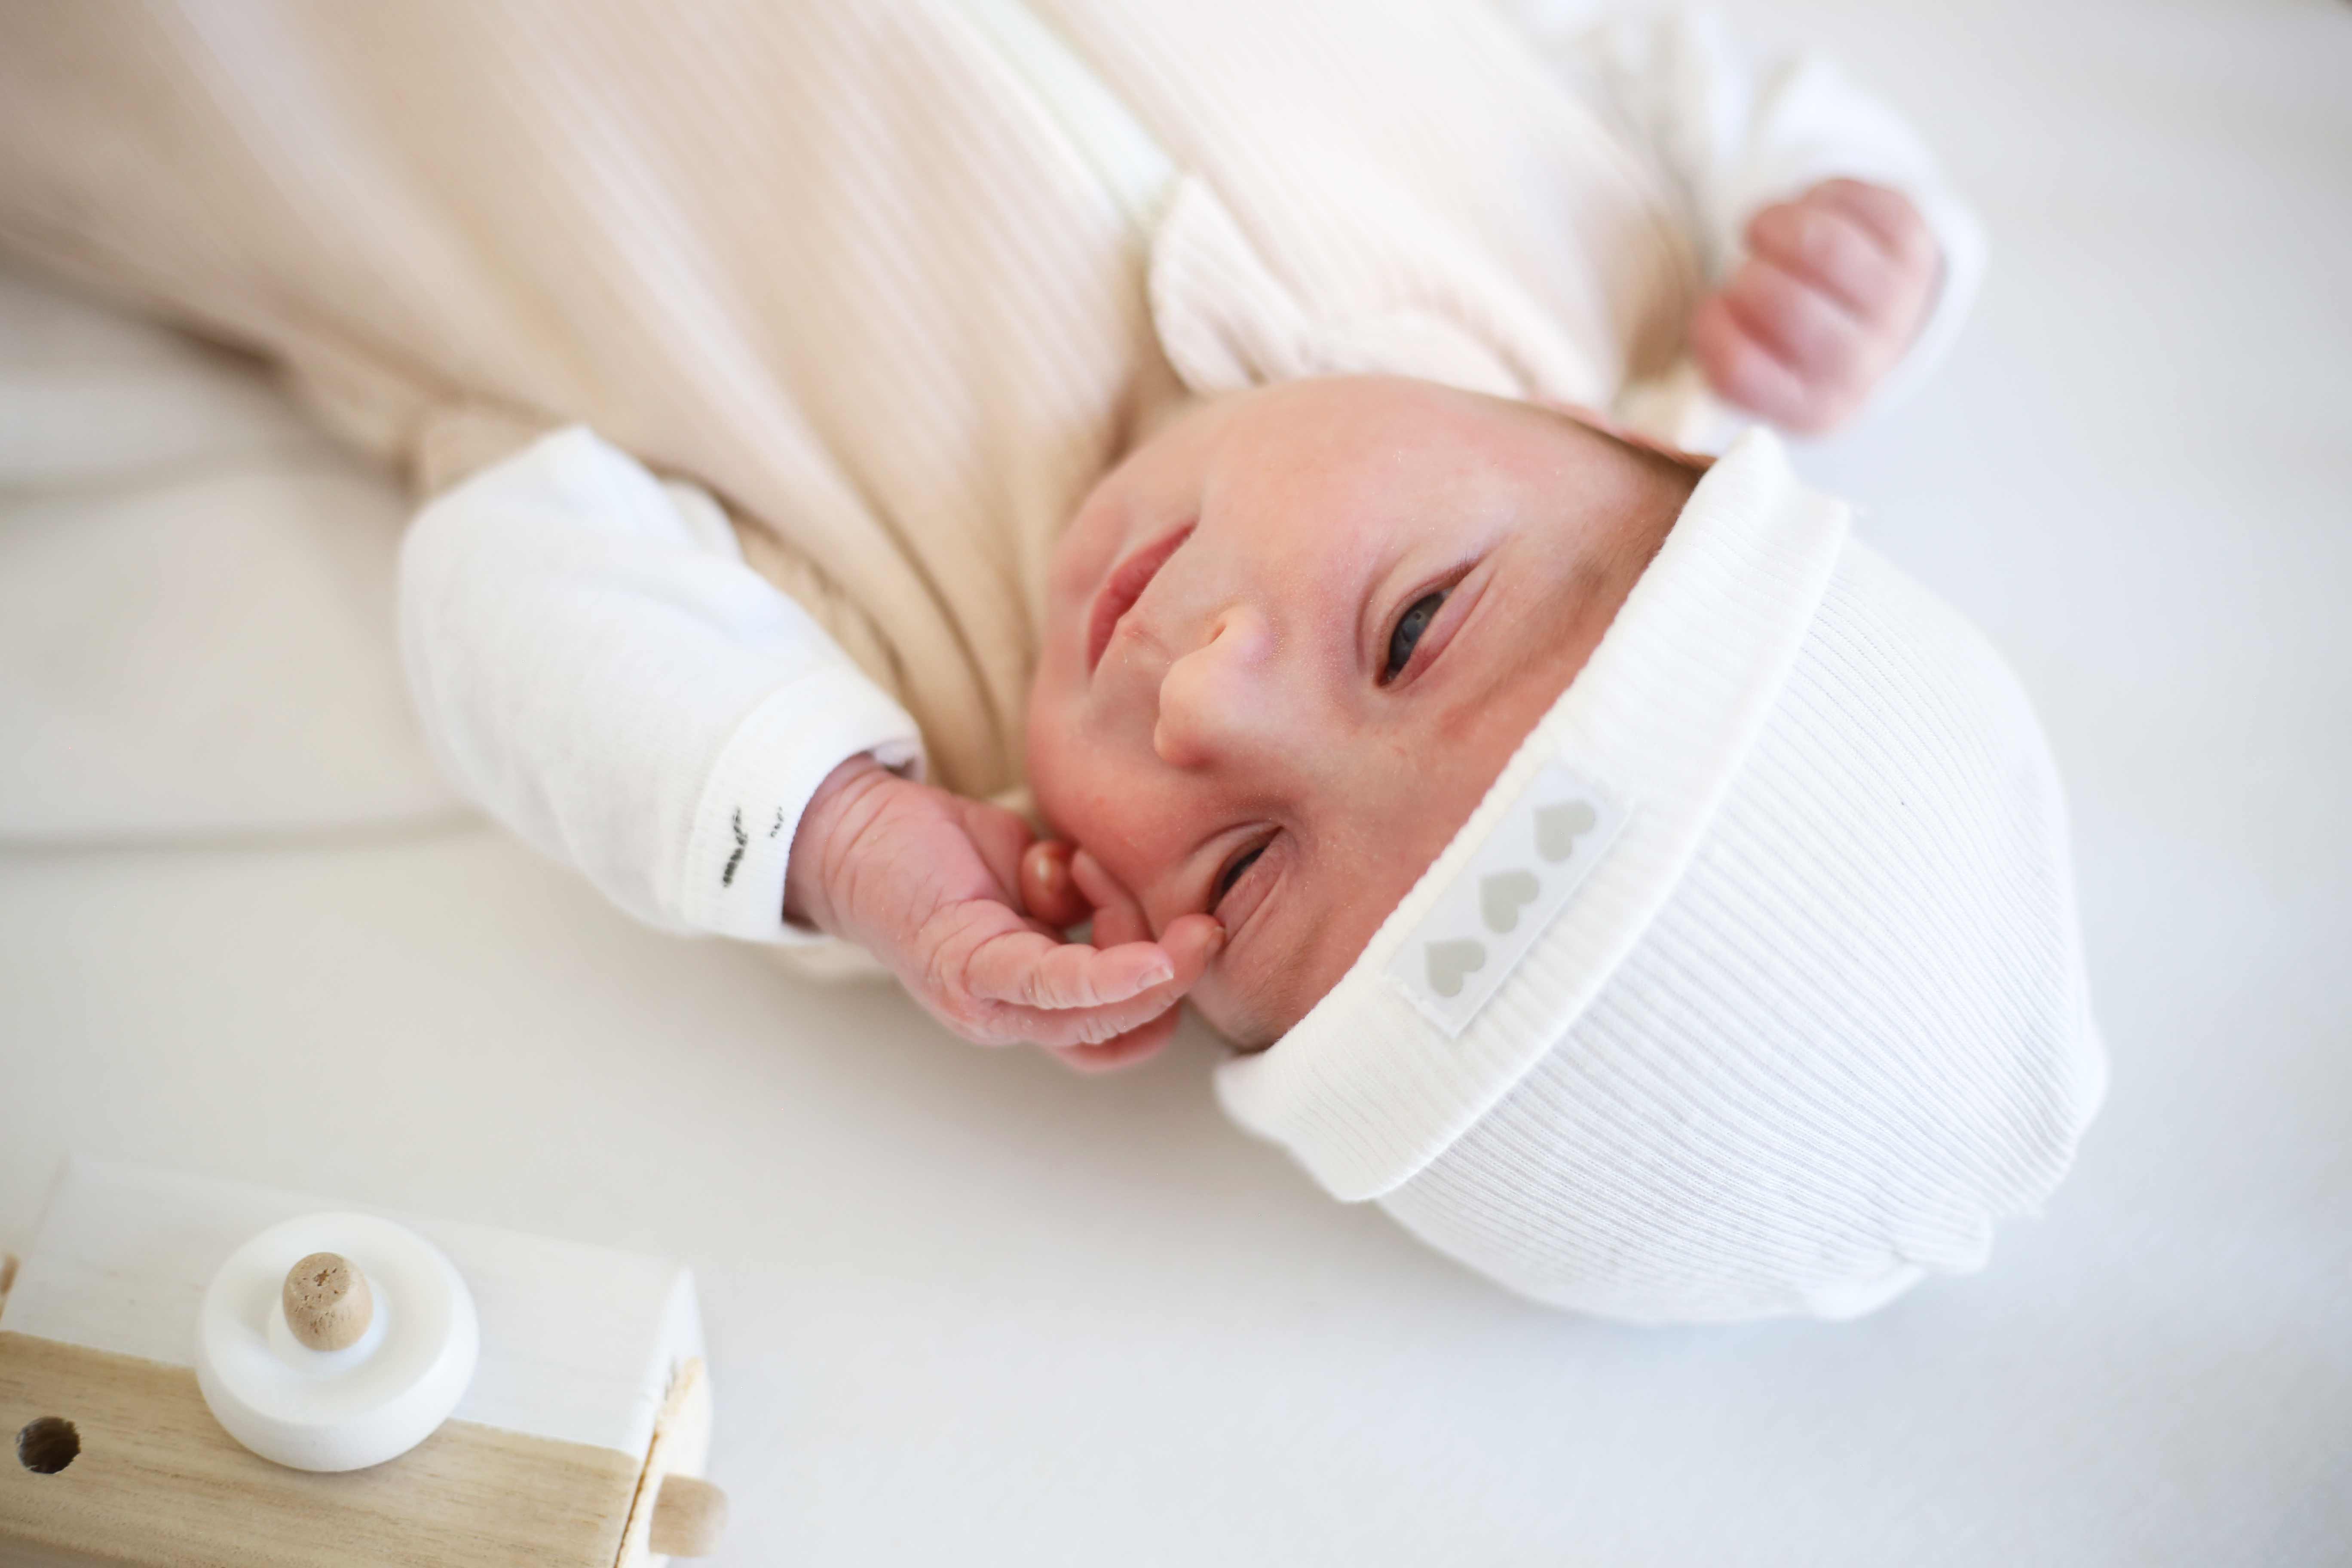 Valise pour la maternité : ce qu'il faut emporter - Aubert Conseils